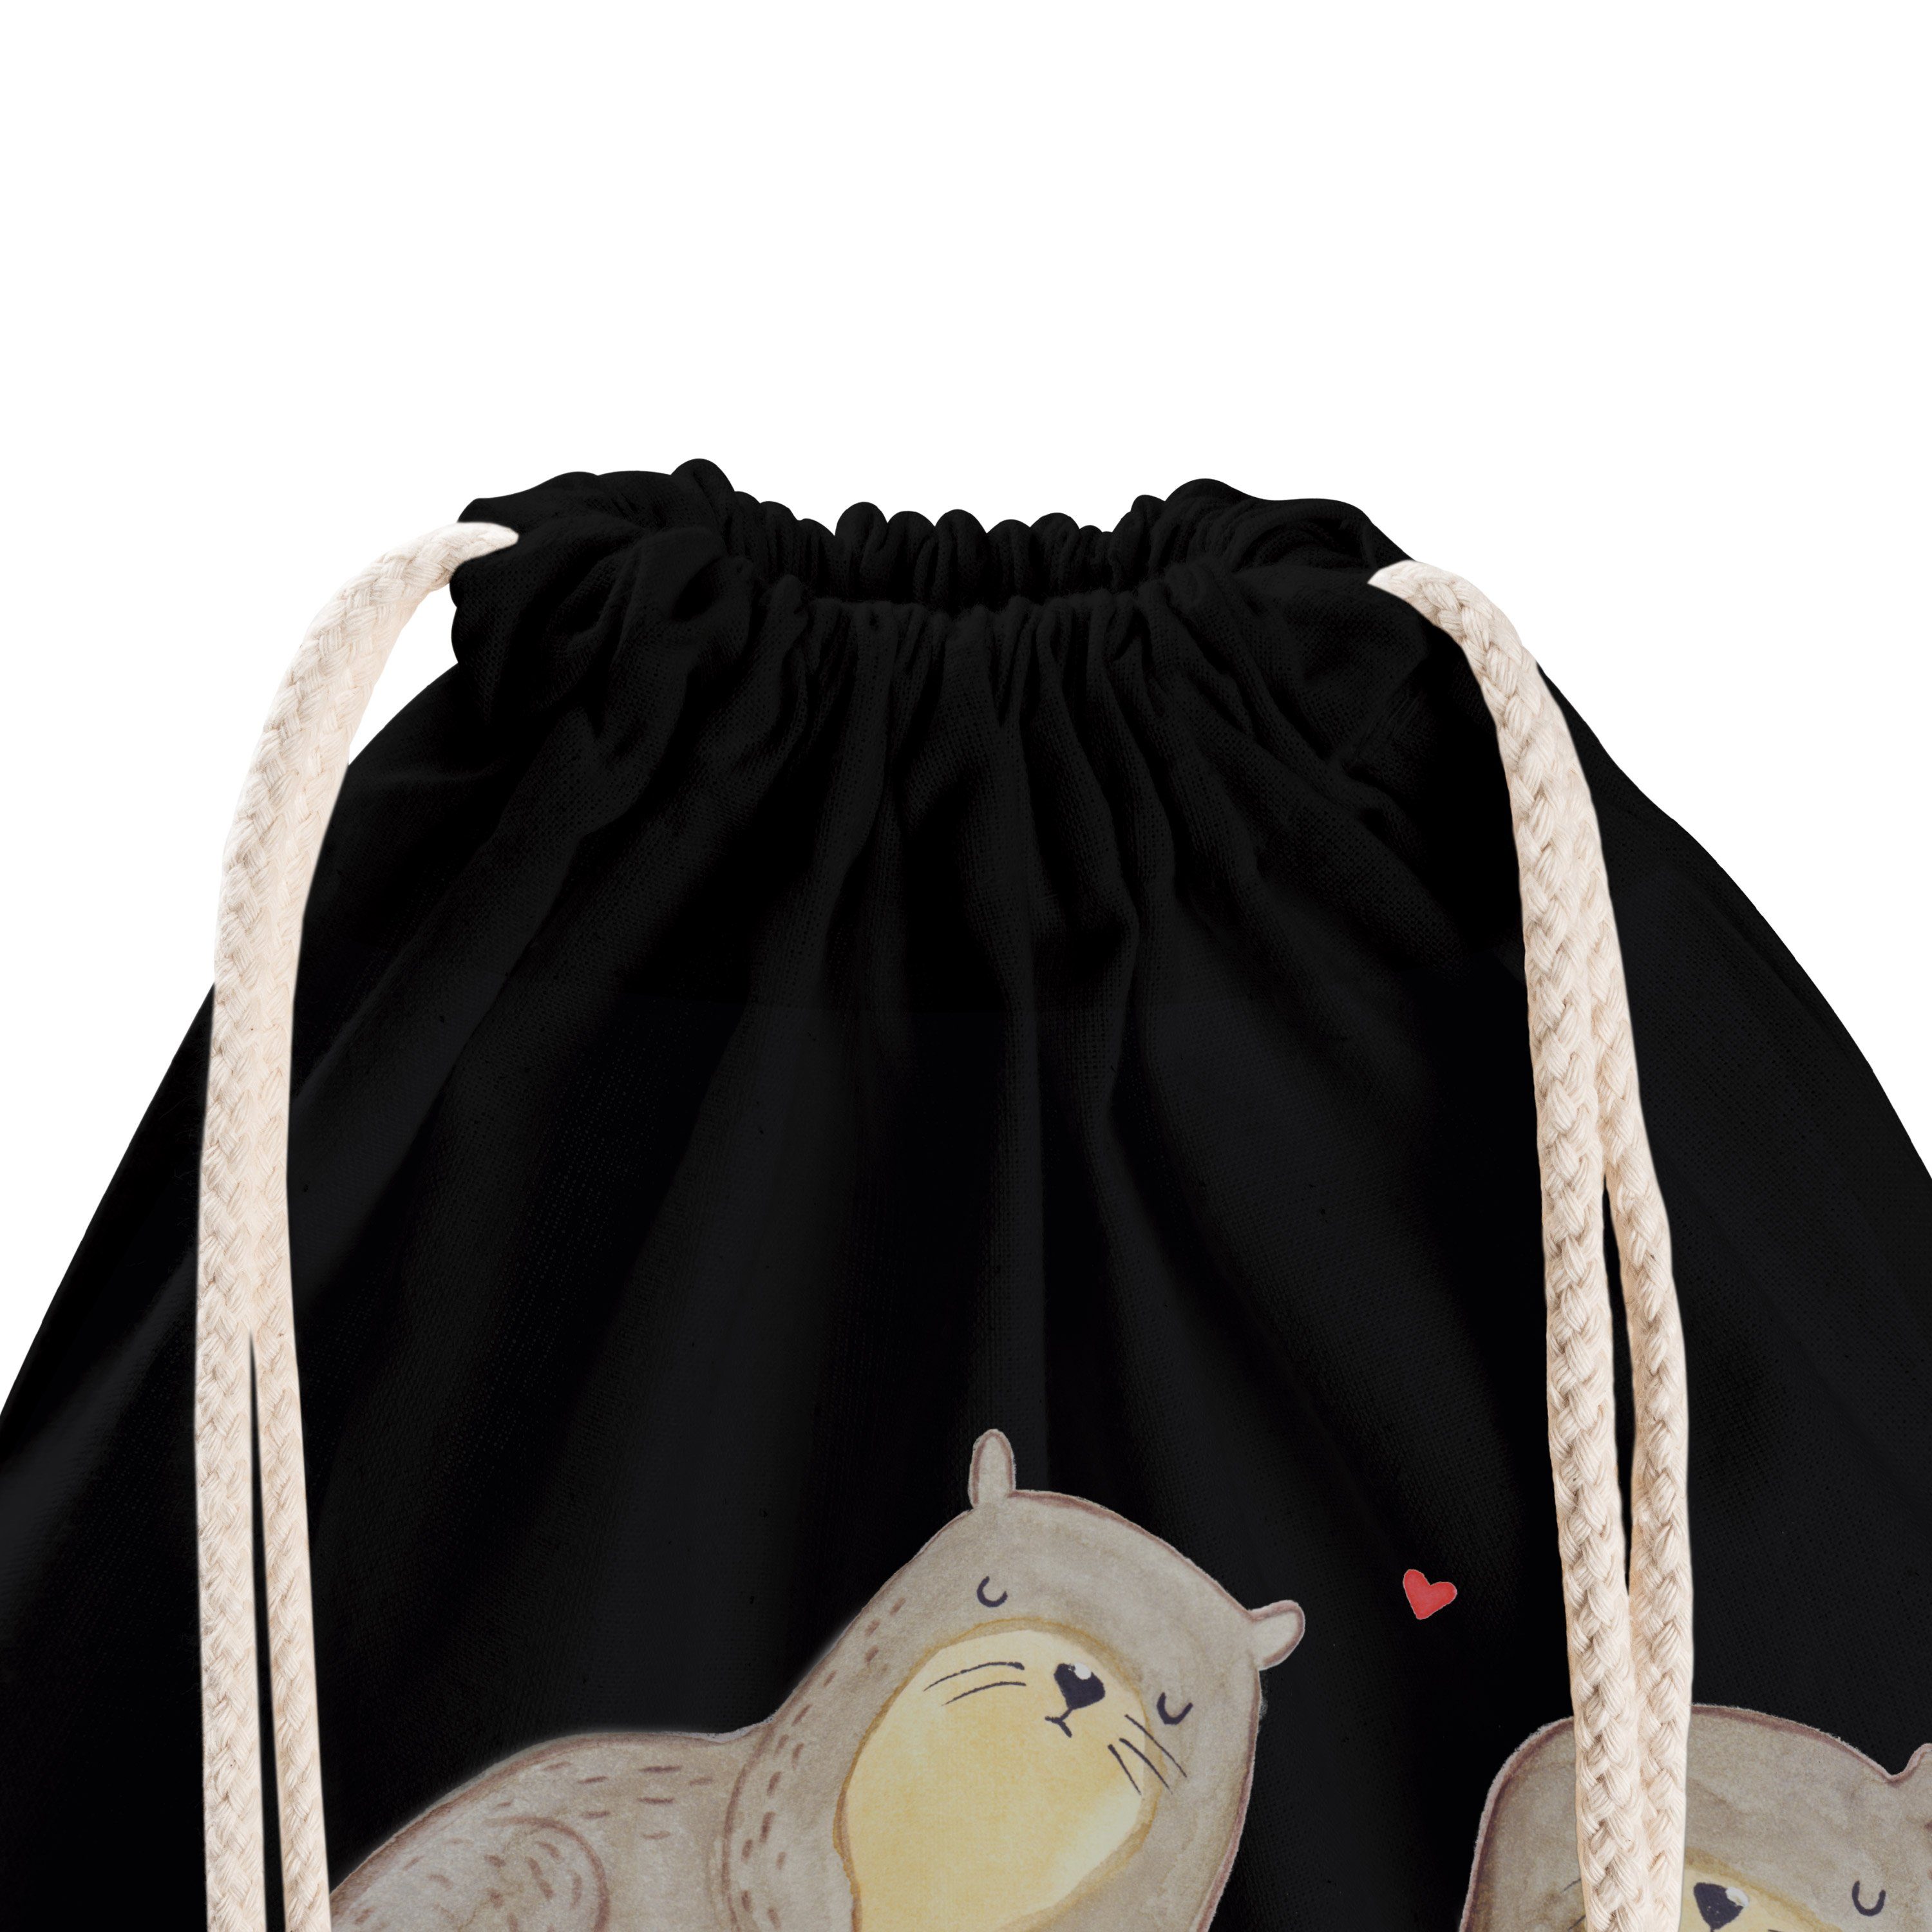 Damen Gepäck|Taschen & Rucksäcke Mr. & Mrs. Panda Sporttasche Otter händchenhaltend - Schwarz - Fischotter, Sporttasche, Beutel,